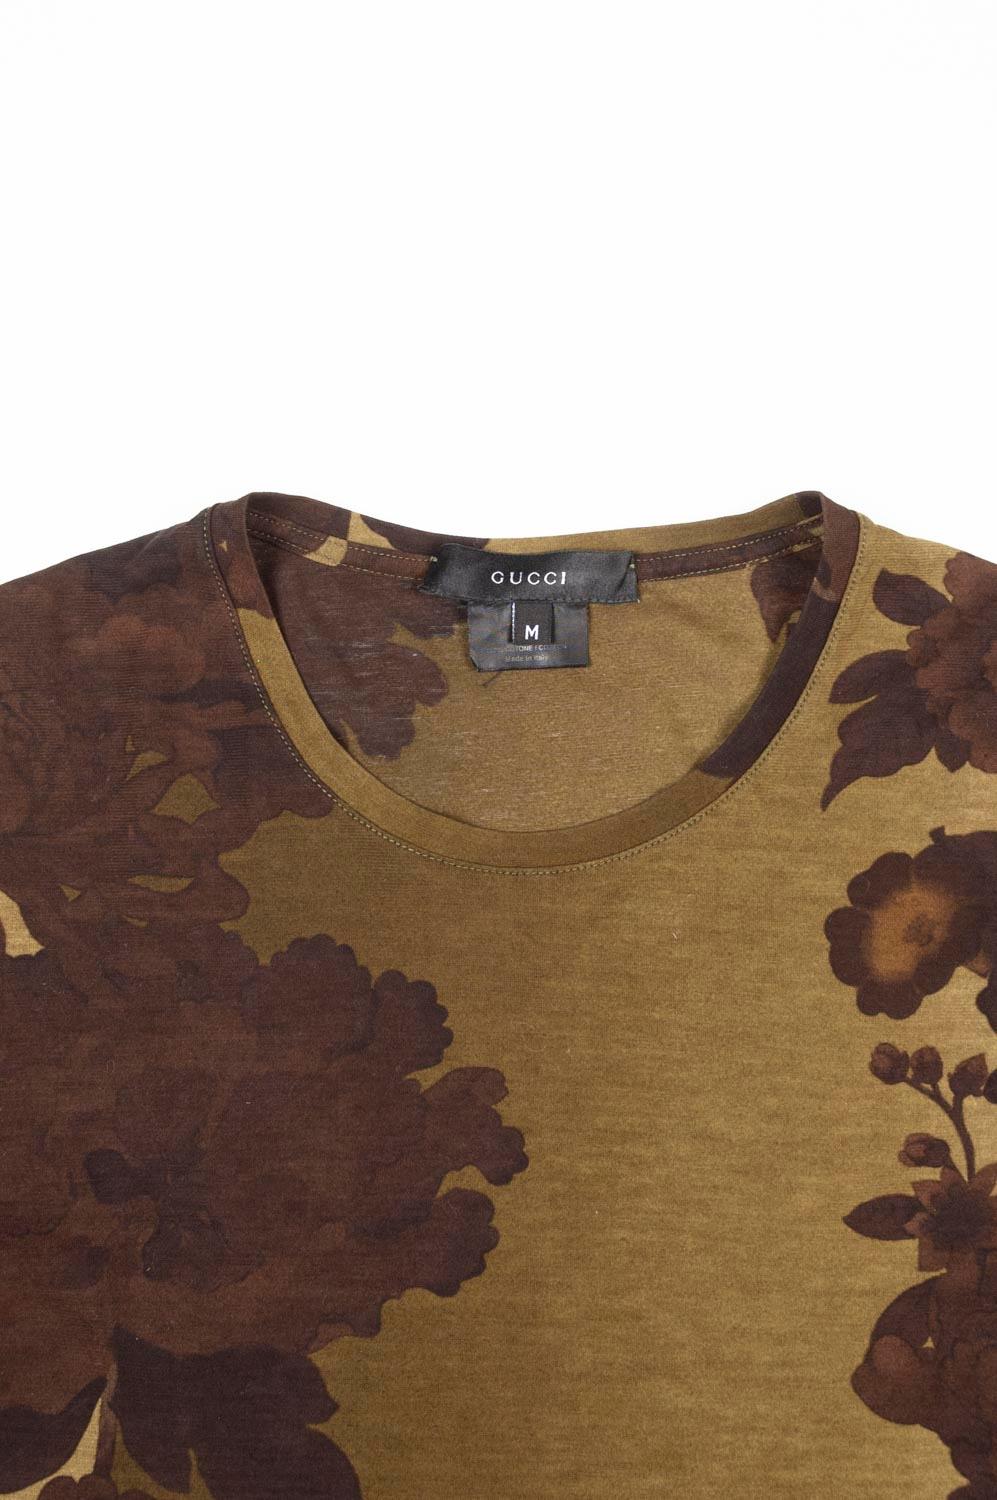 Zum Verkauf steht ein 100% echtes Gucci by Tom Ford Herren T-Shirt, S498
Farbe: braun/sand
(Eine tatsächliche Farbe kann ein wenig variieren aufgrund individueller Computer-Bildschirm Interpretation)
MATERIAL: 100% Baumwolle
Tag Größe: M läuft